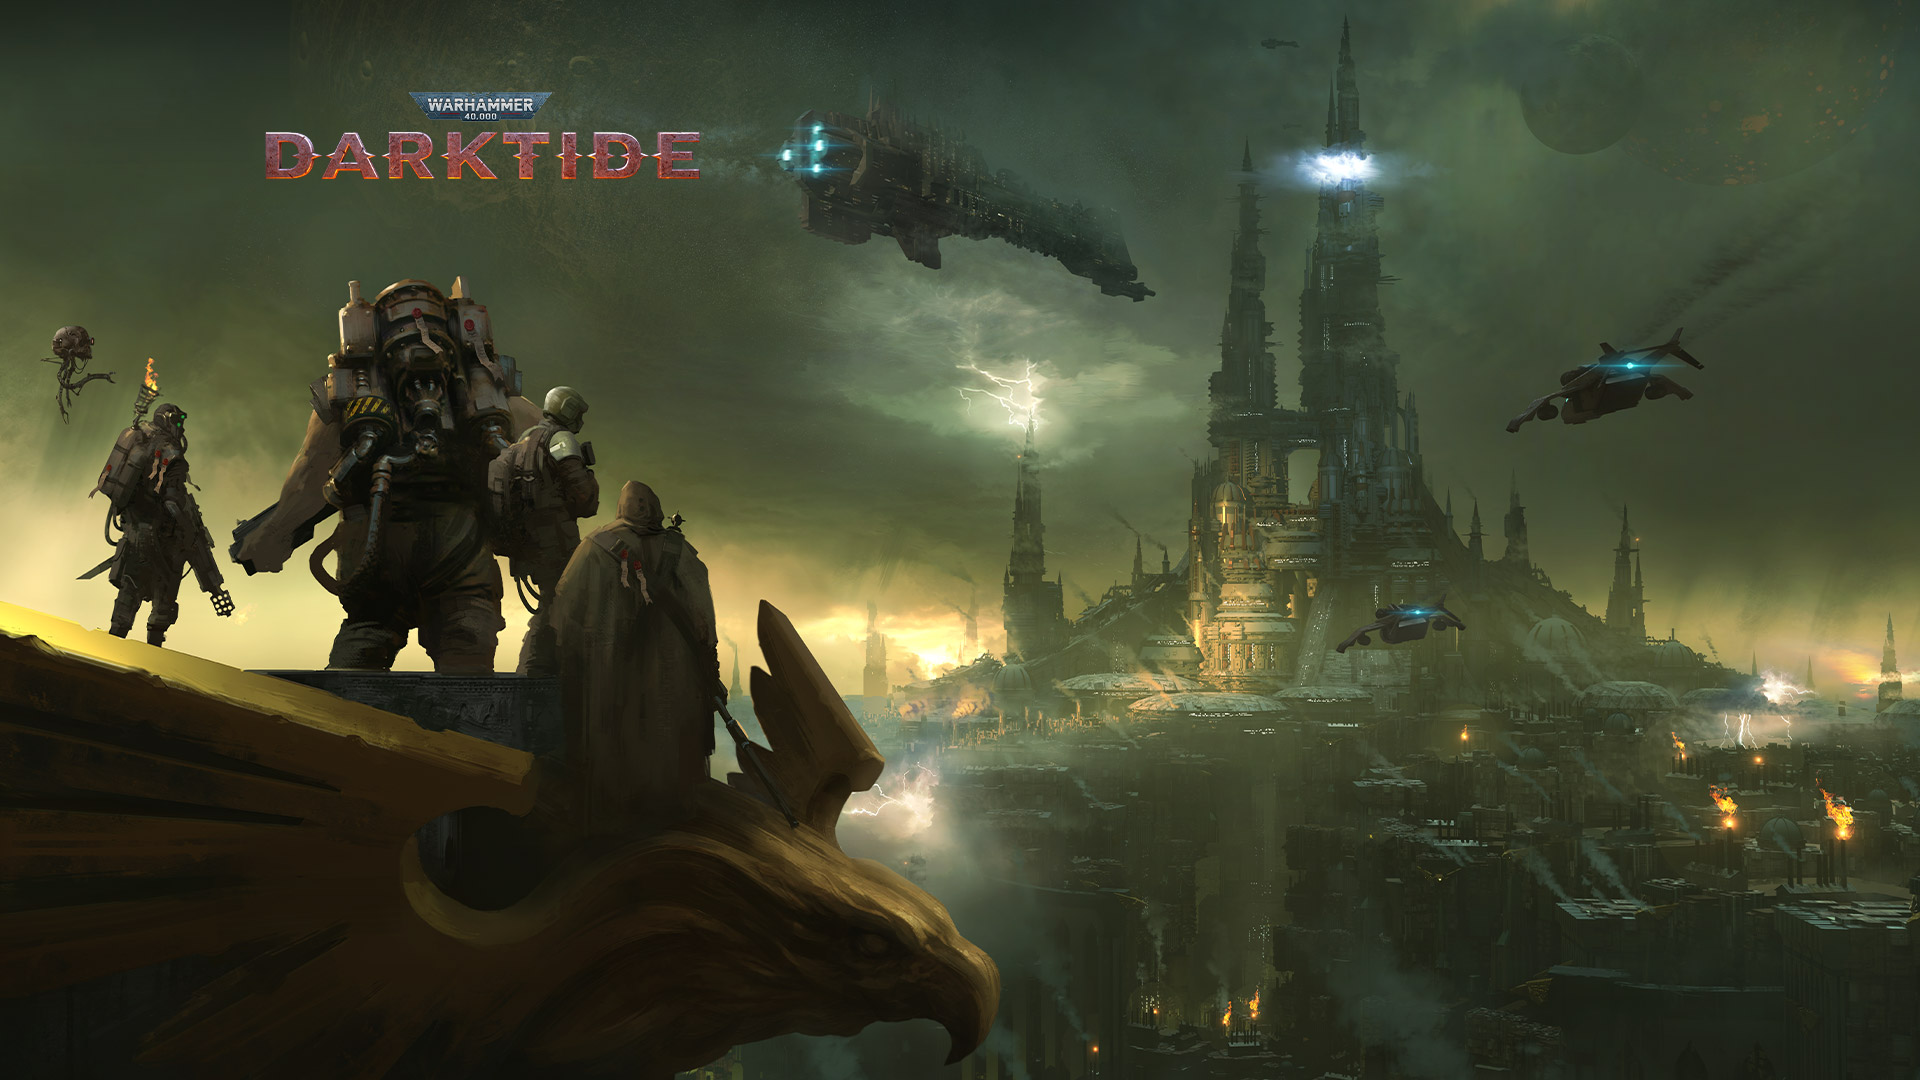 Warhammer 40 000 Darktide, ryhmä hahmoja katsoo sumuisen kaupungin yli.